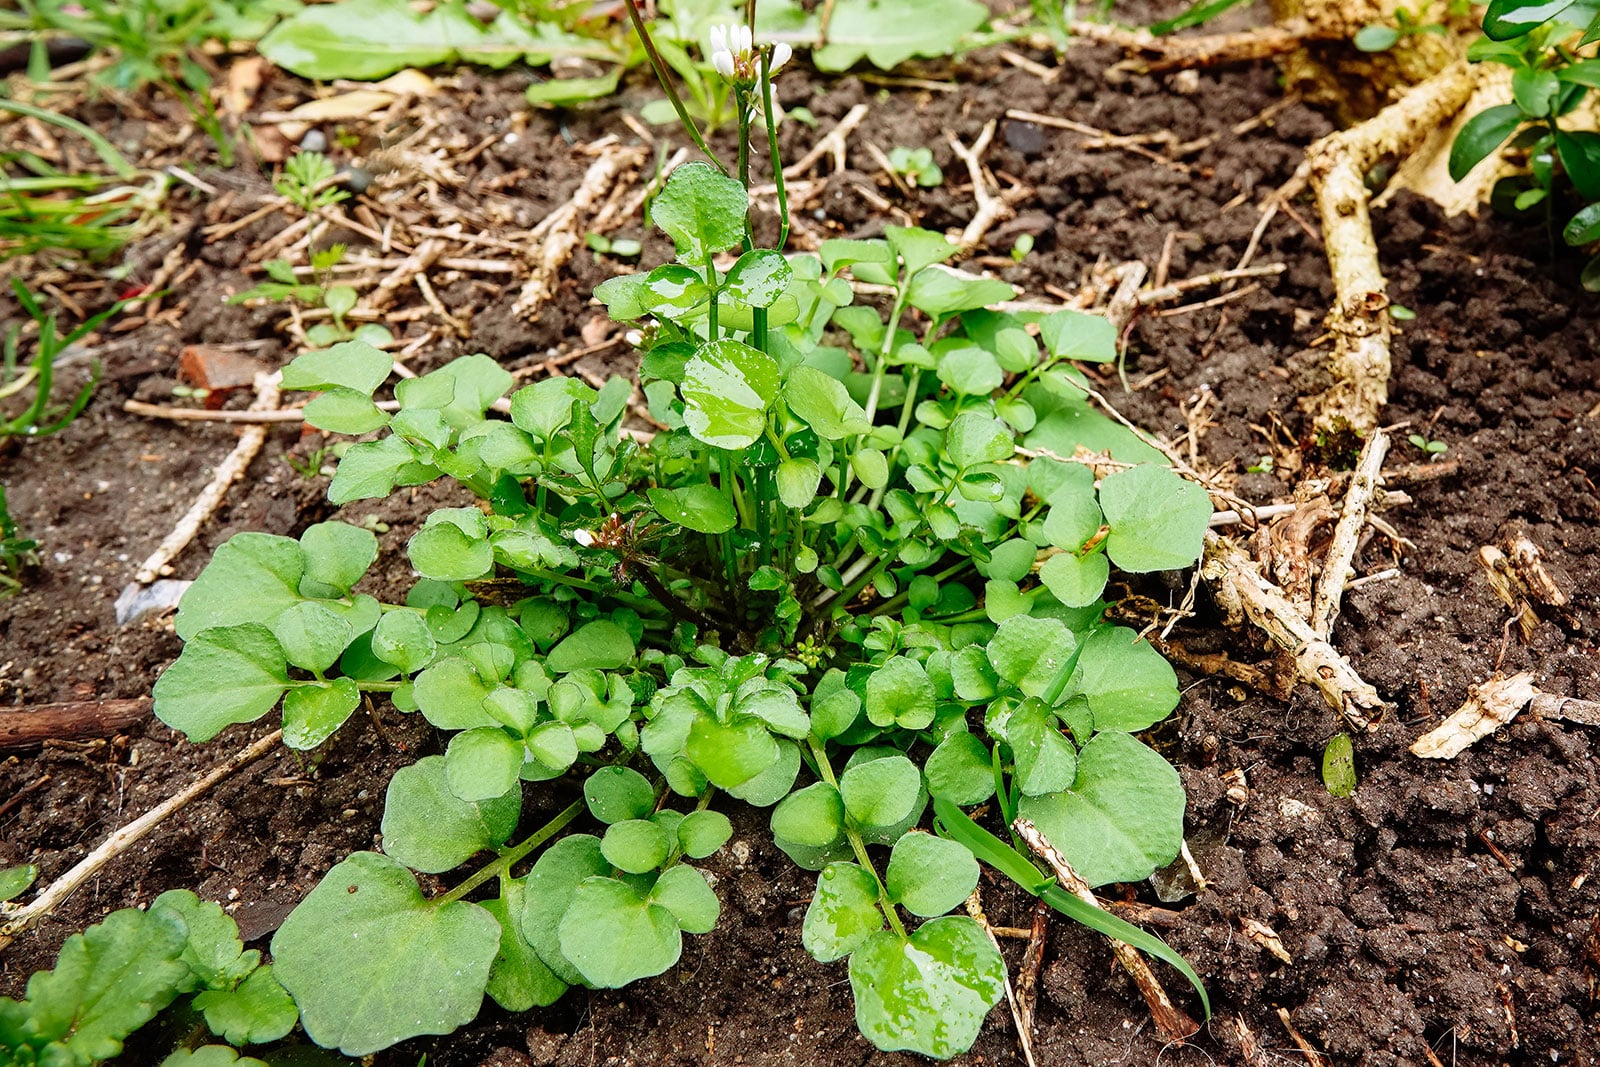 Bittercress growing in moist soil